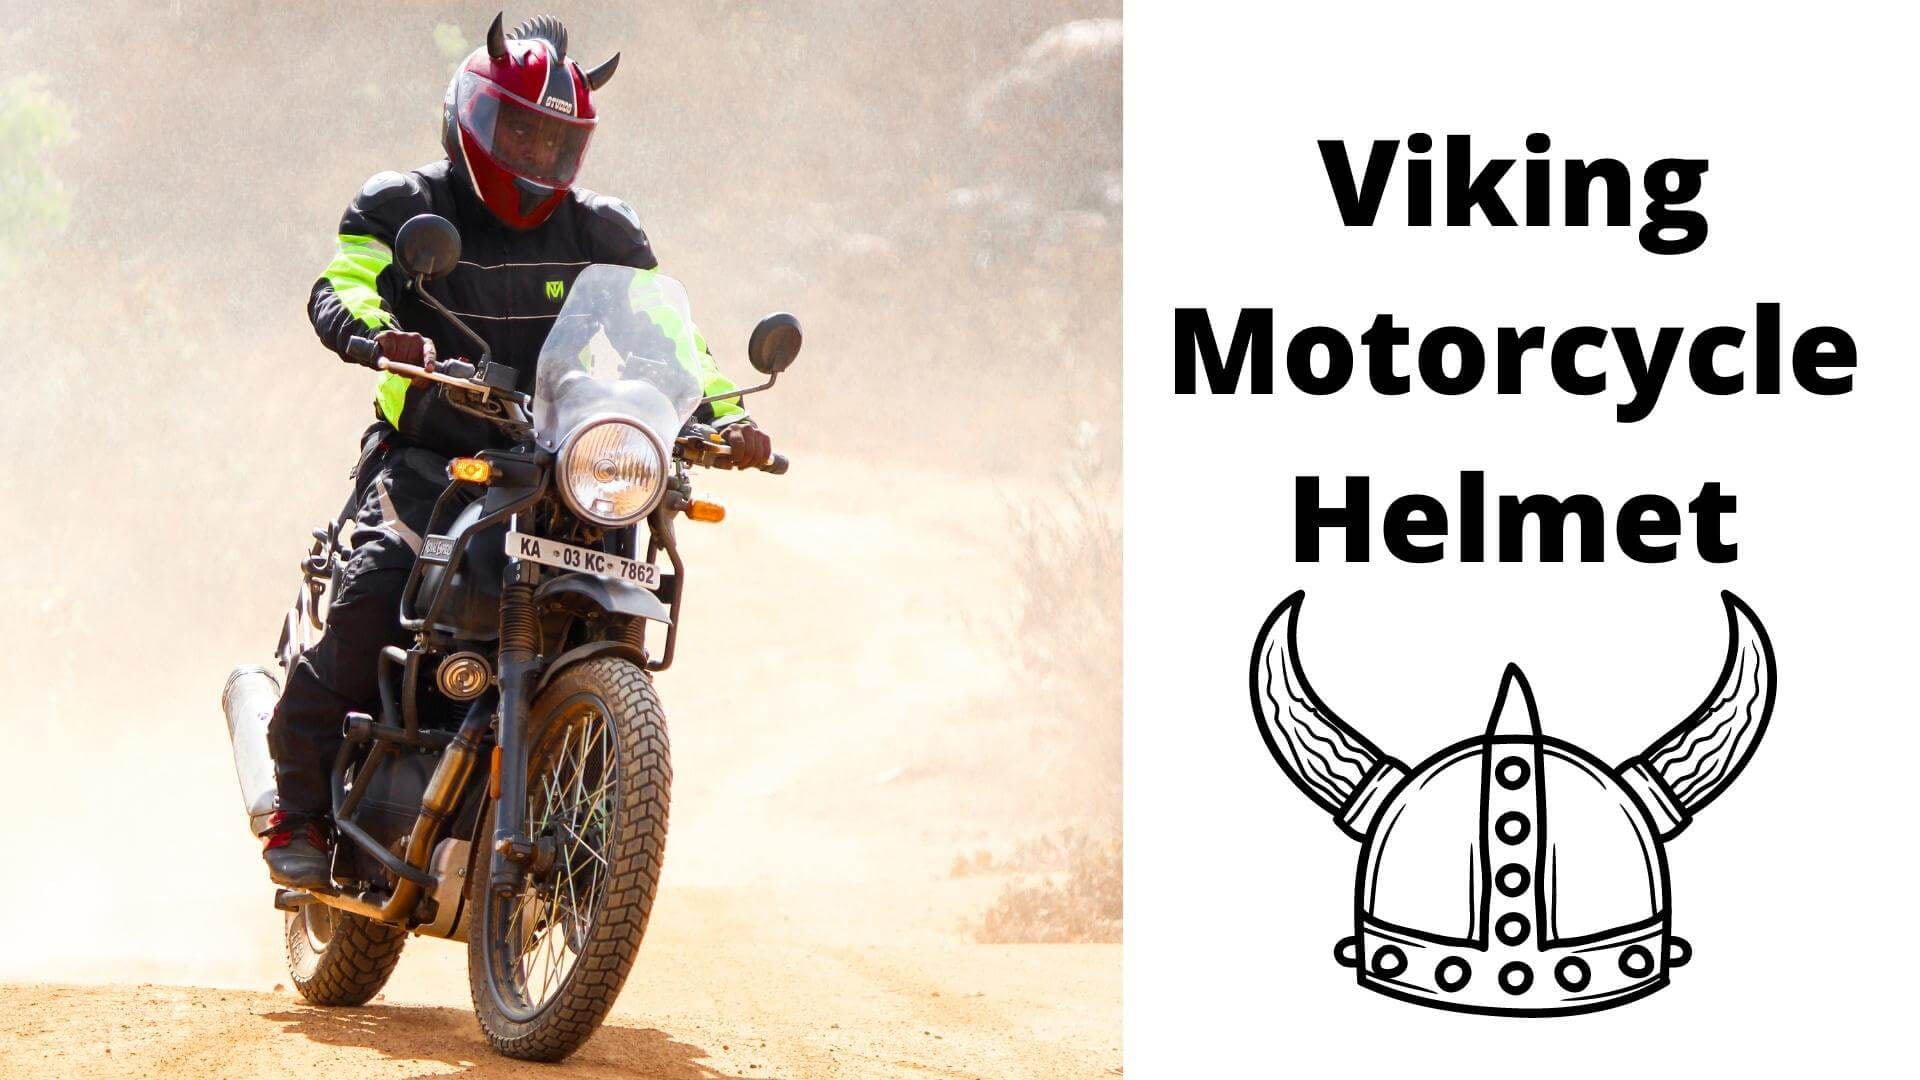 Viking motorcycle helmet